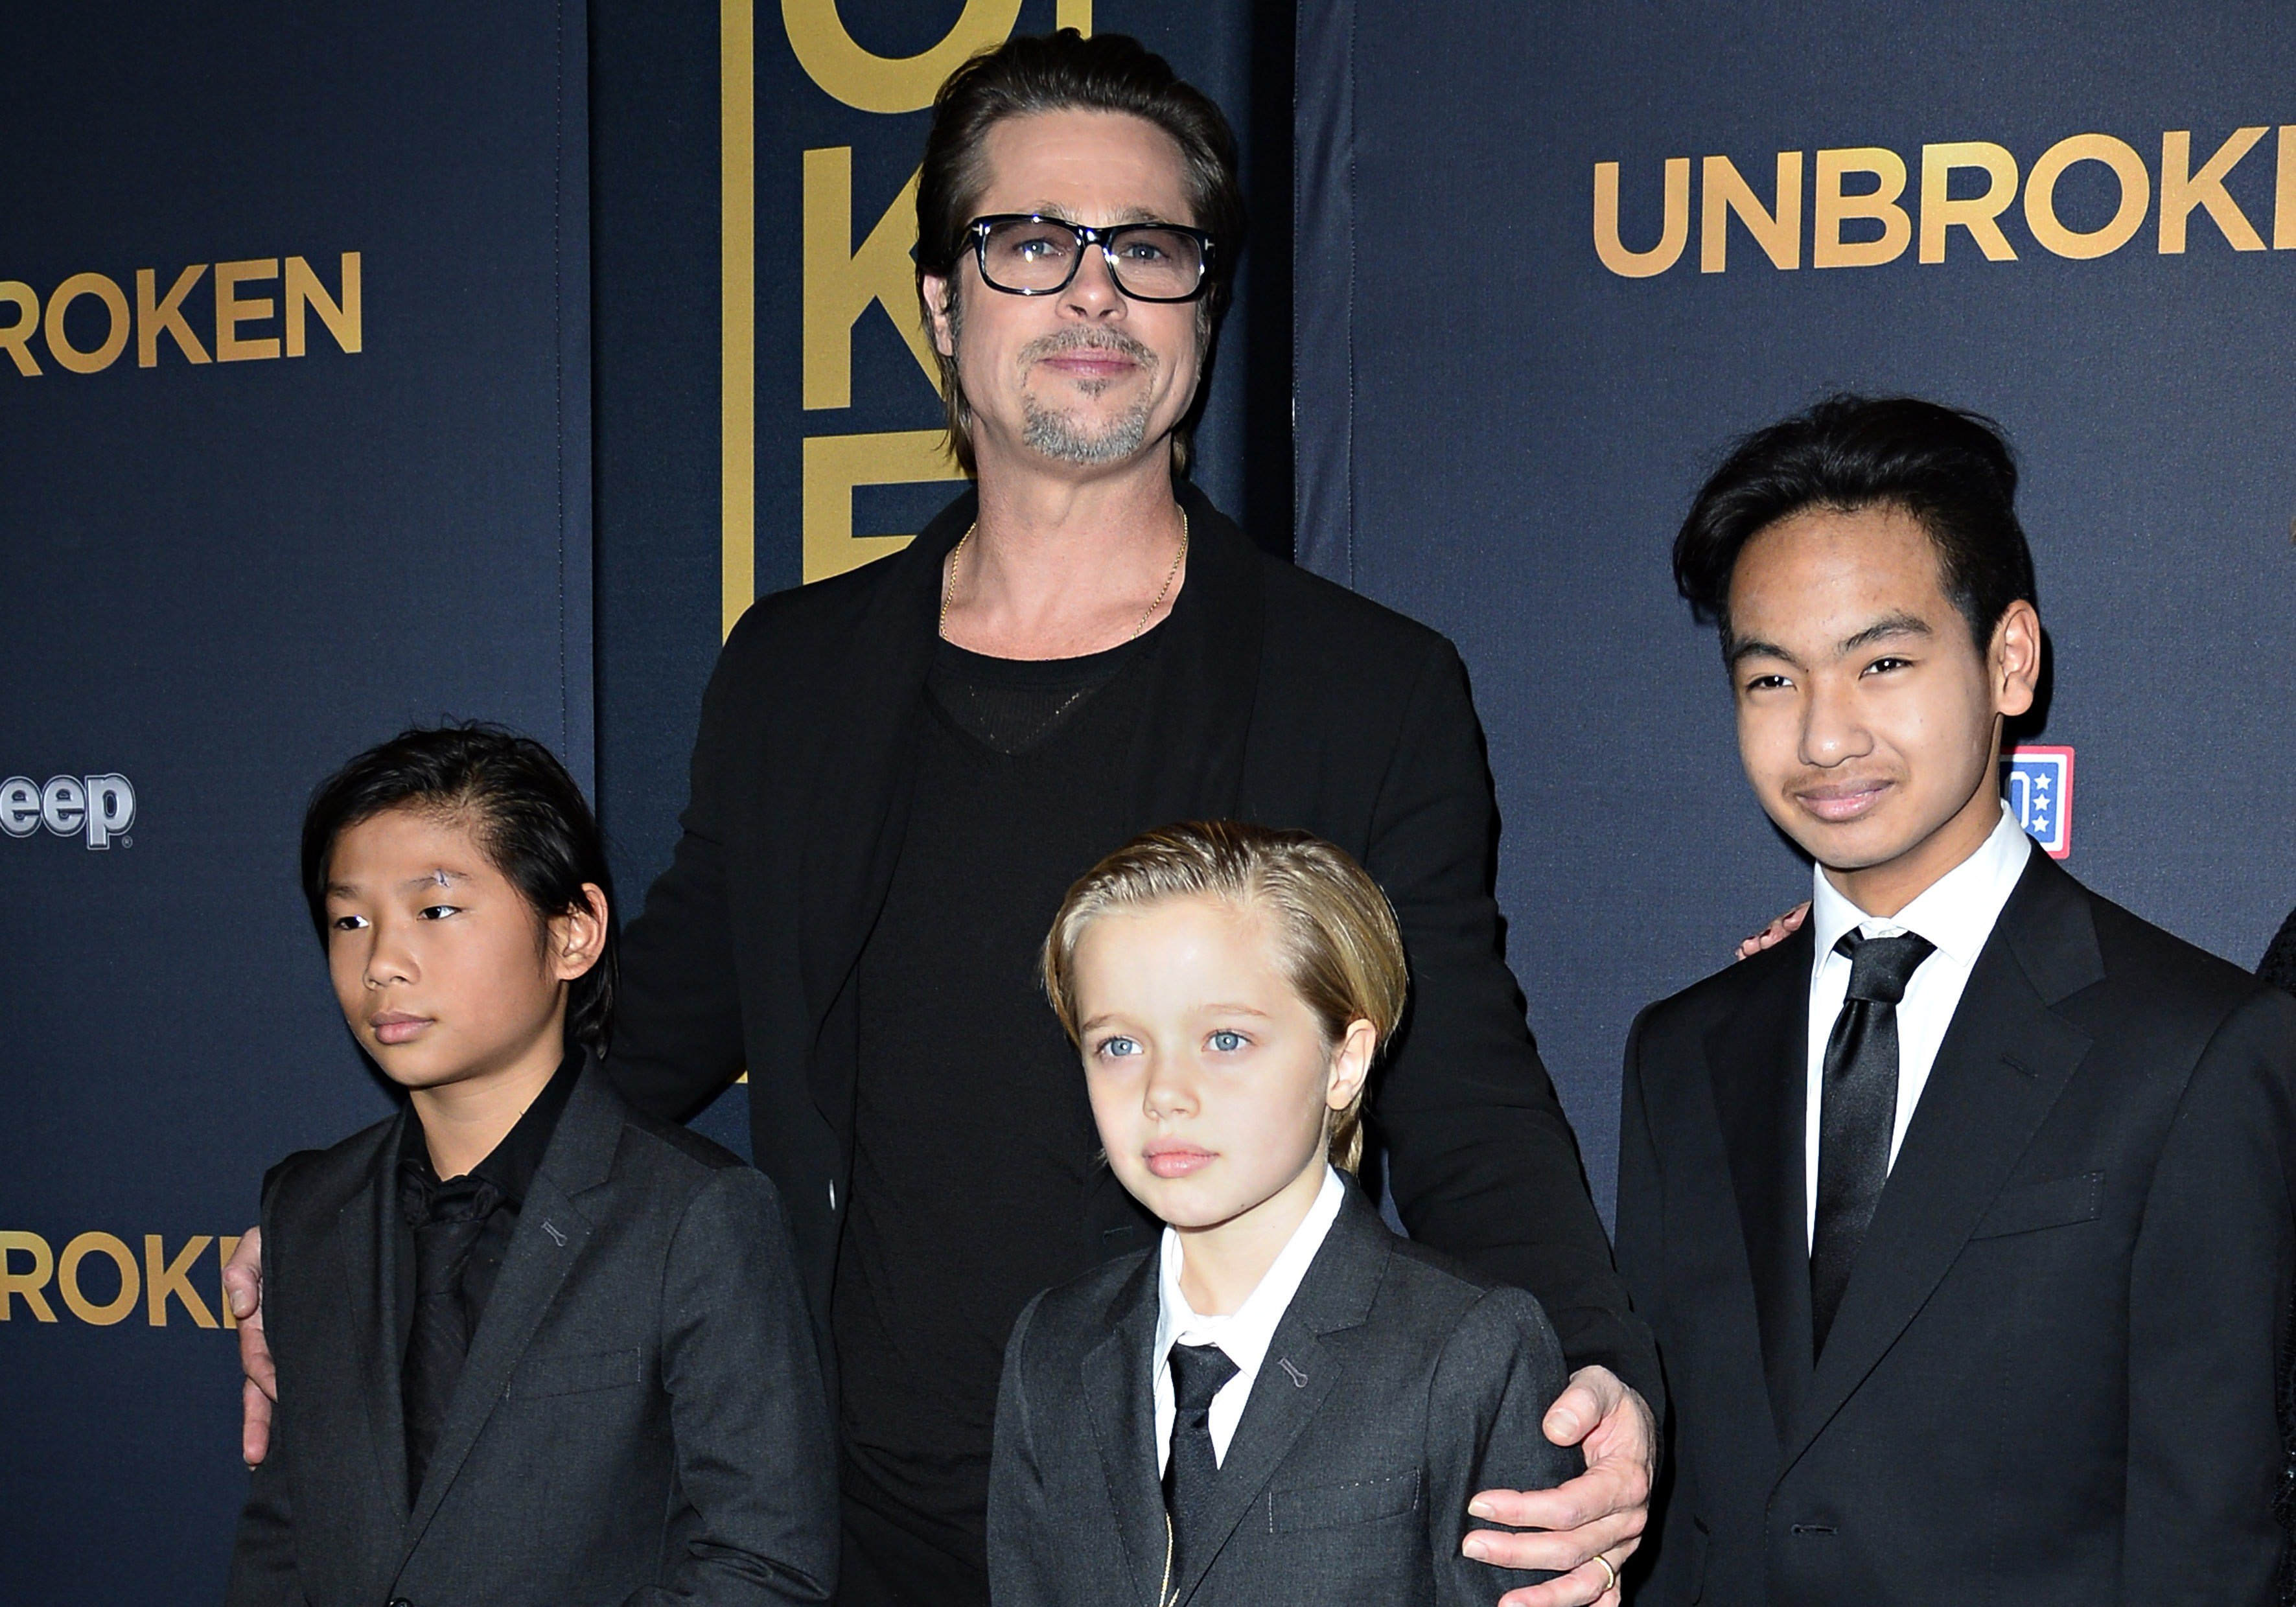 Brad Pit, Pax, Shiloh et Maddox Jolie-Pitt à la première américaine de "Unbroken", le 15 décembre 2014, à Hollywood, en Californie | Source : Getty Images